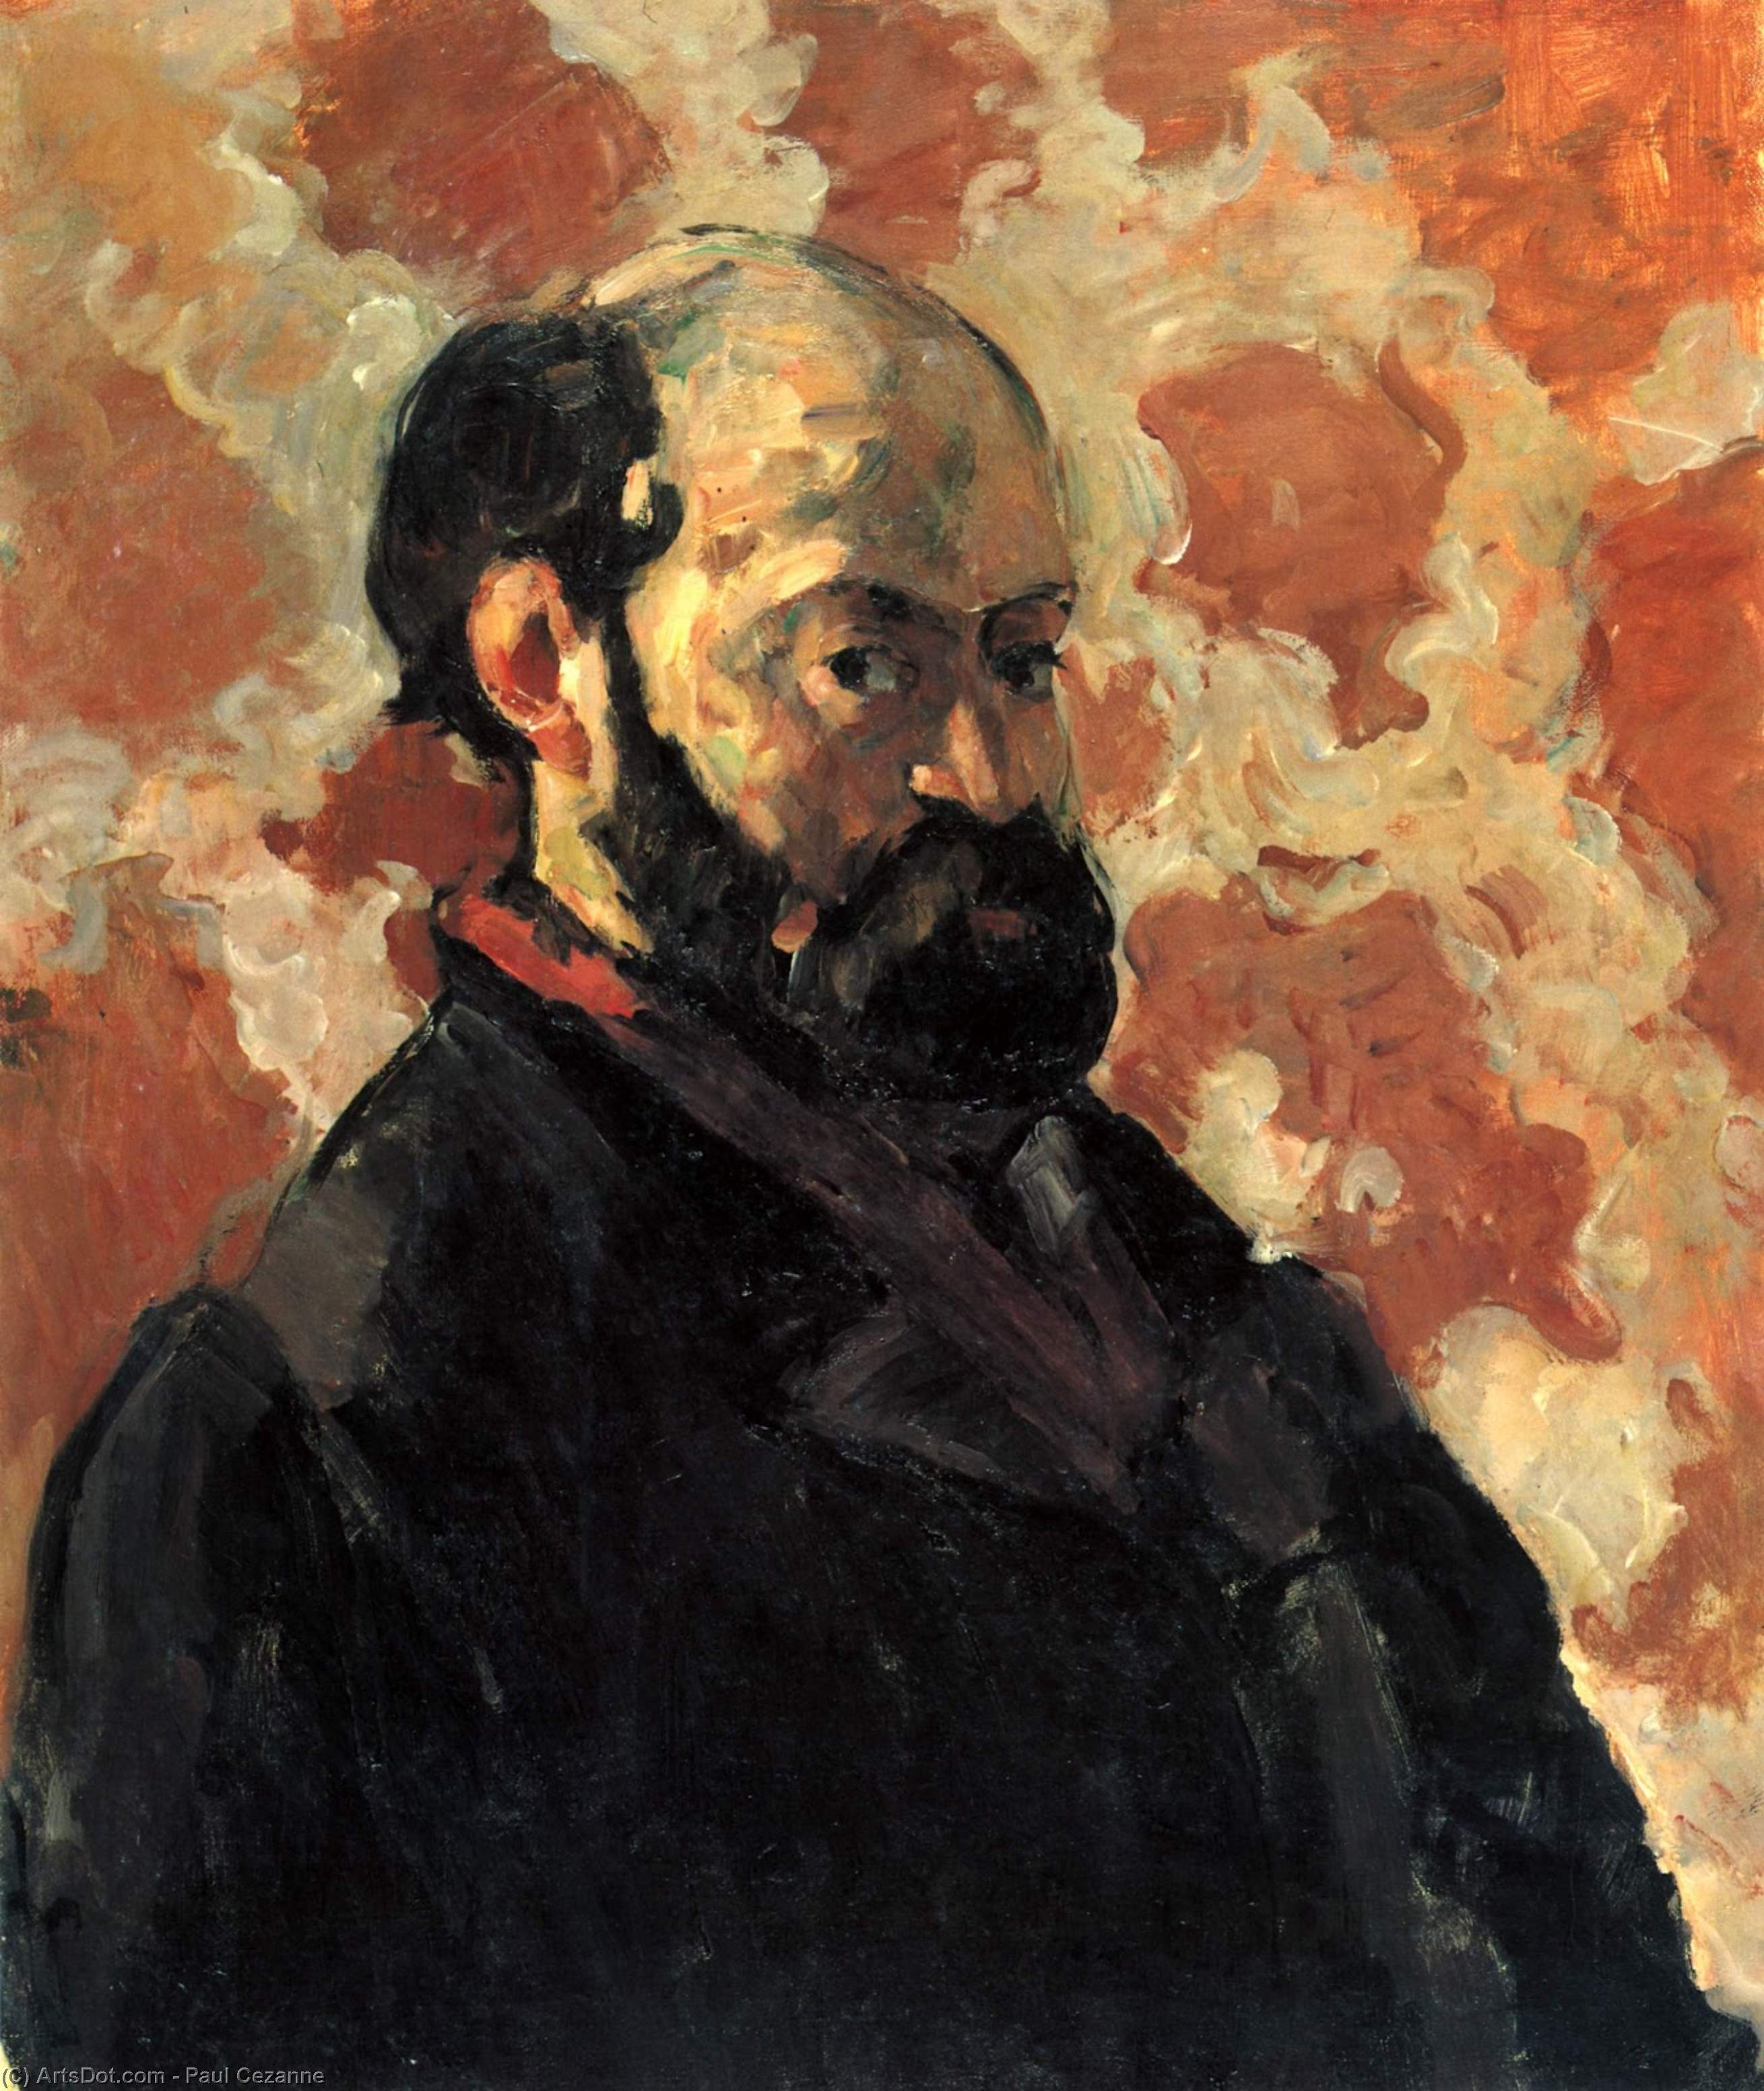 WikiOO.org - Encyclopedia of Fine Arts - Maleri, Artwork Paul Cezanne - Self-portrait in front of pink background